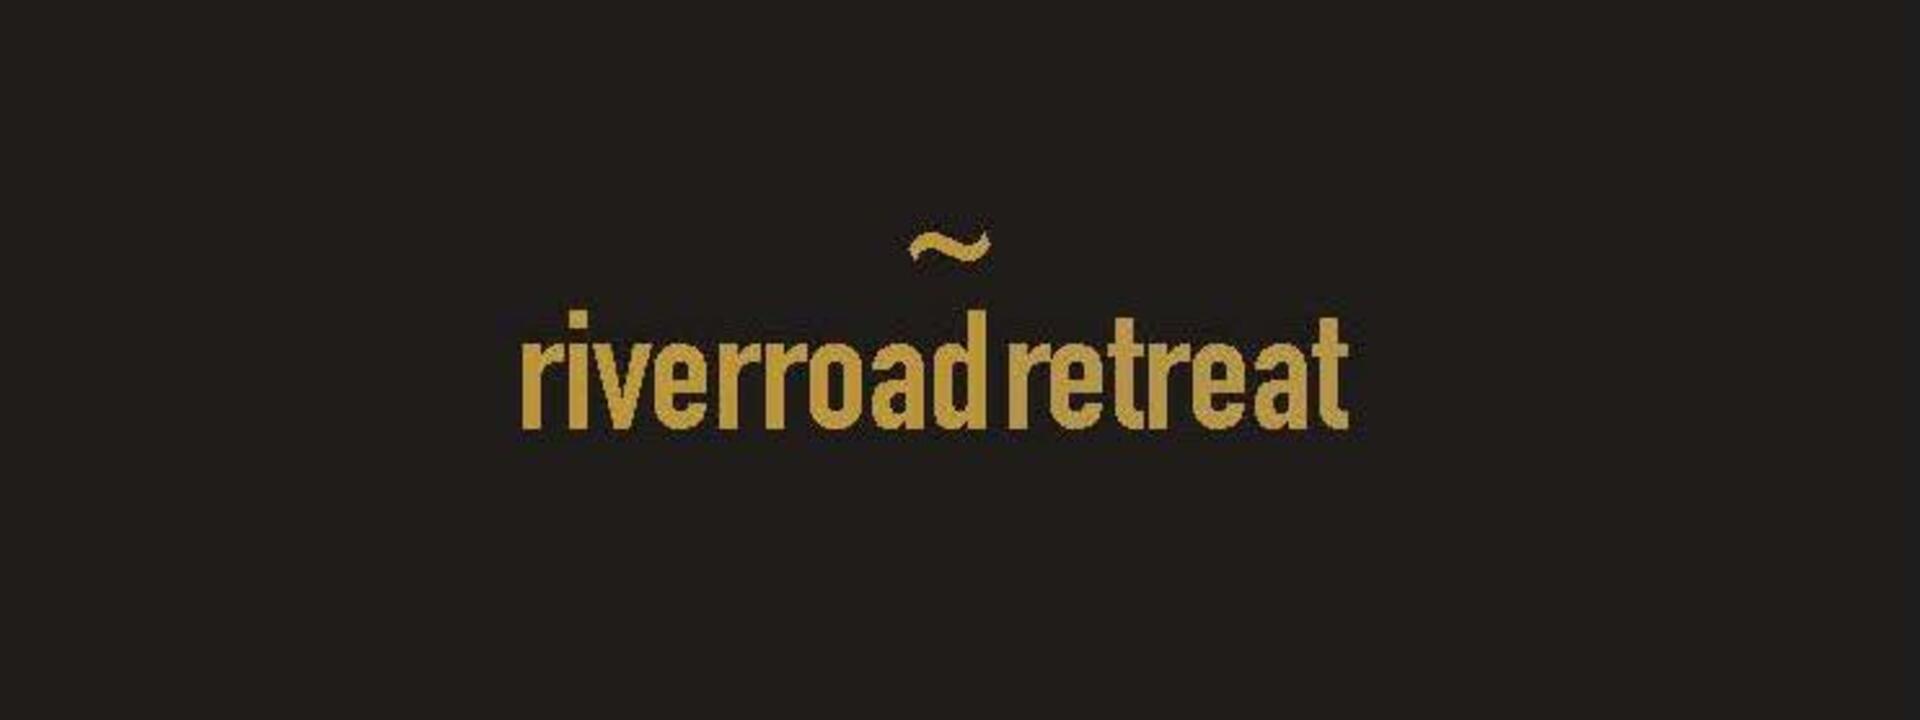 logo-river-road-retreat.jpg